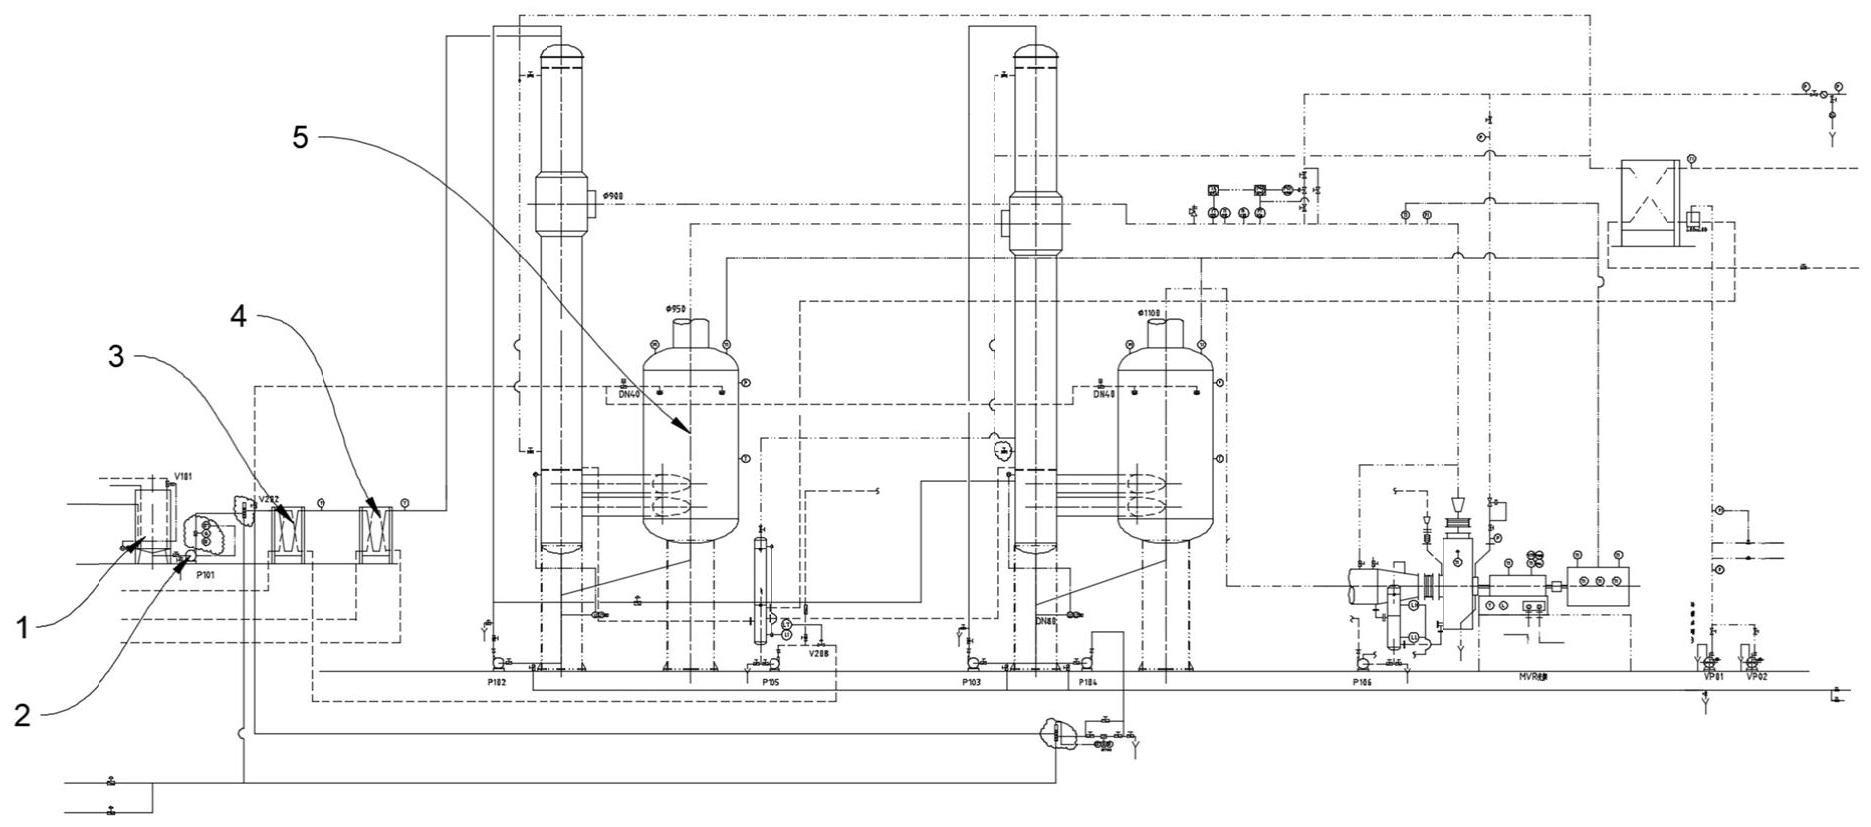 一种机械式蒸汽压缩系统在番茄酱加工中的应用的制作方法